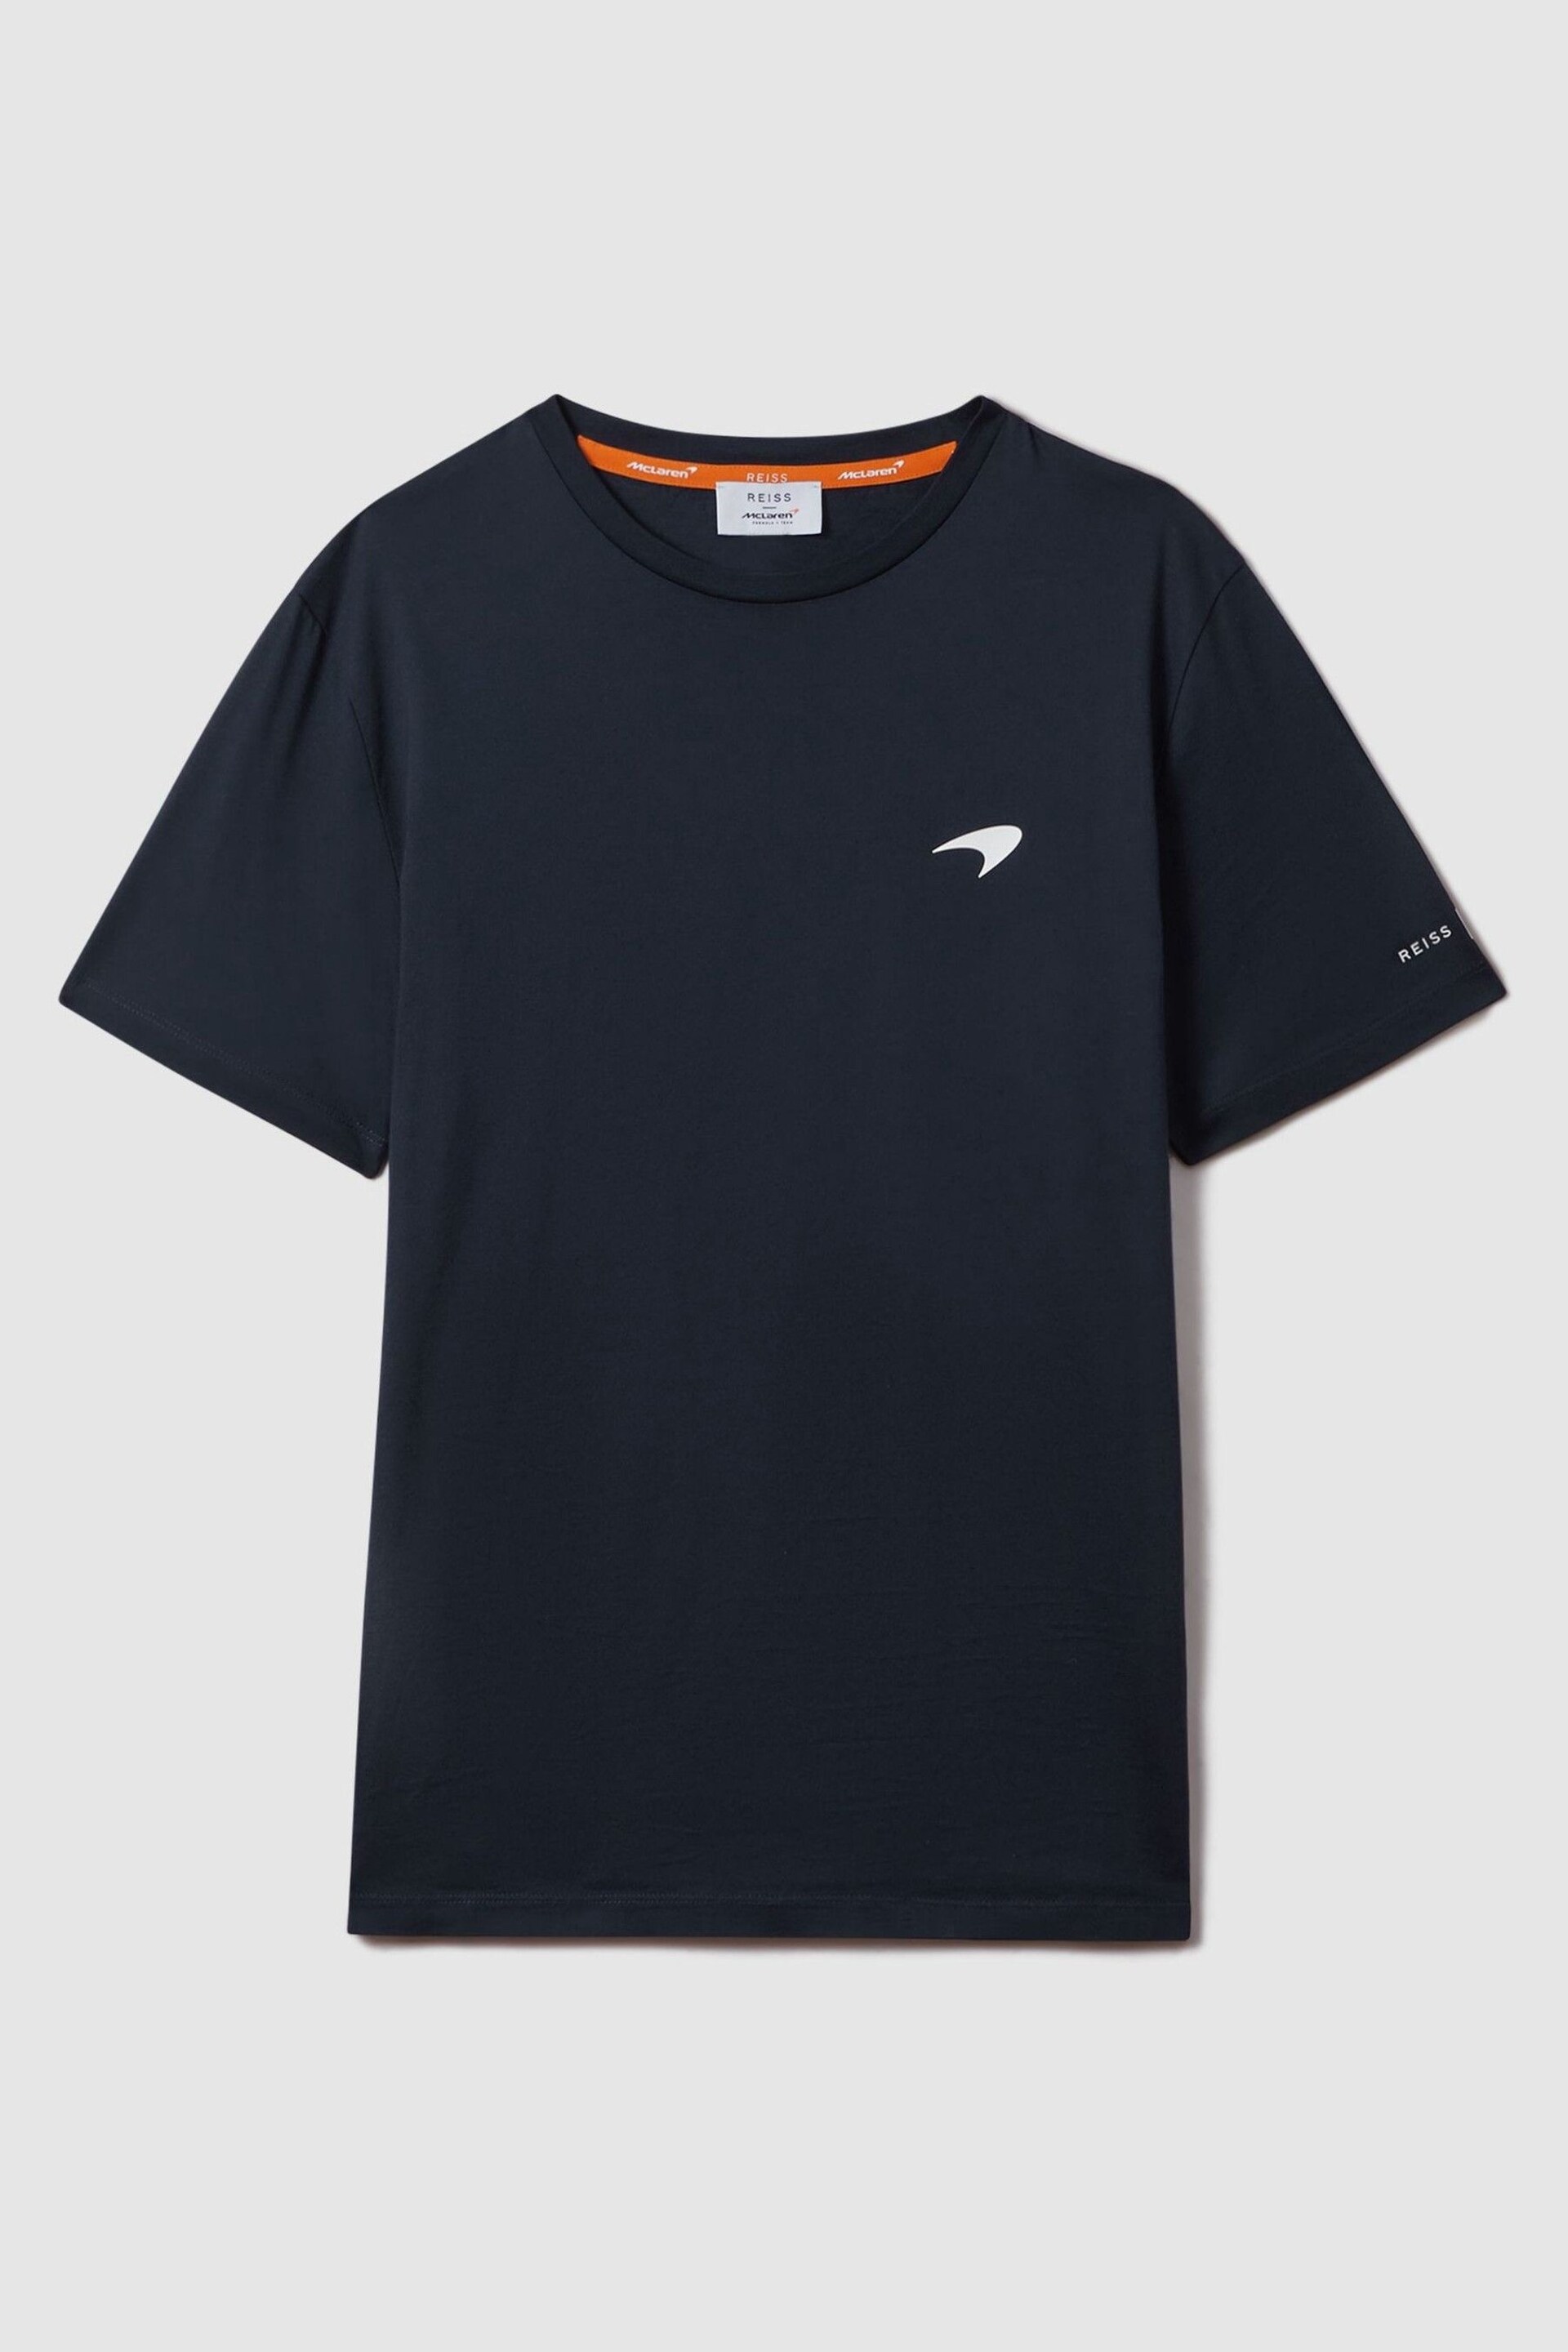 McLaren F1 Mercerised Cotton Crew Neck T-Shirt - Image 2 of 6